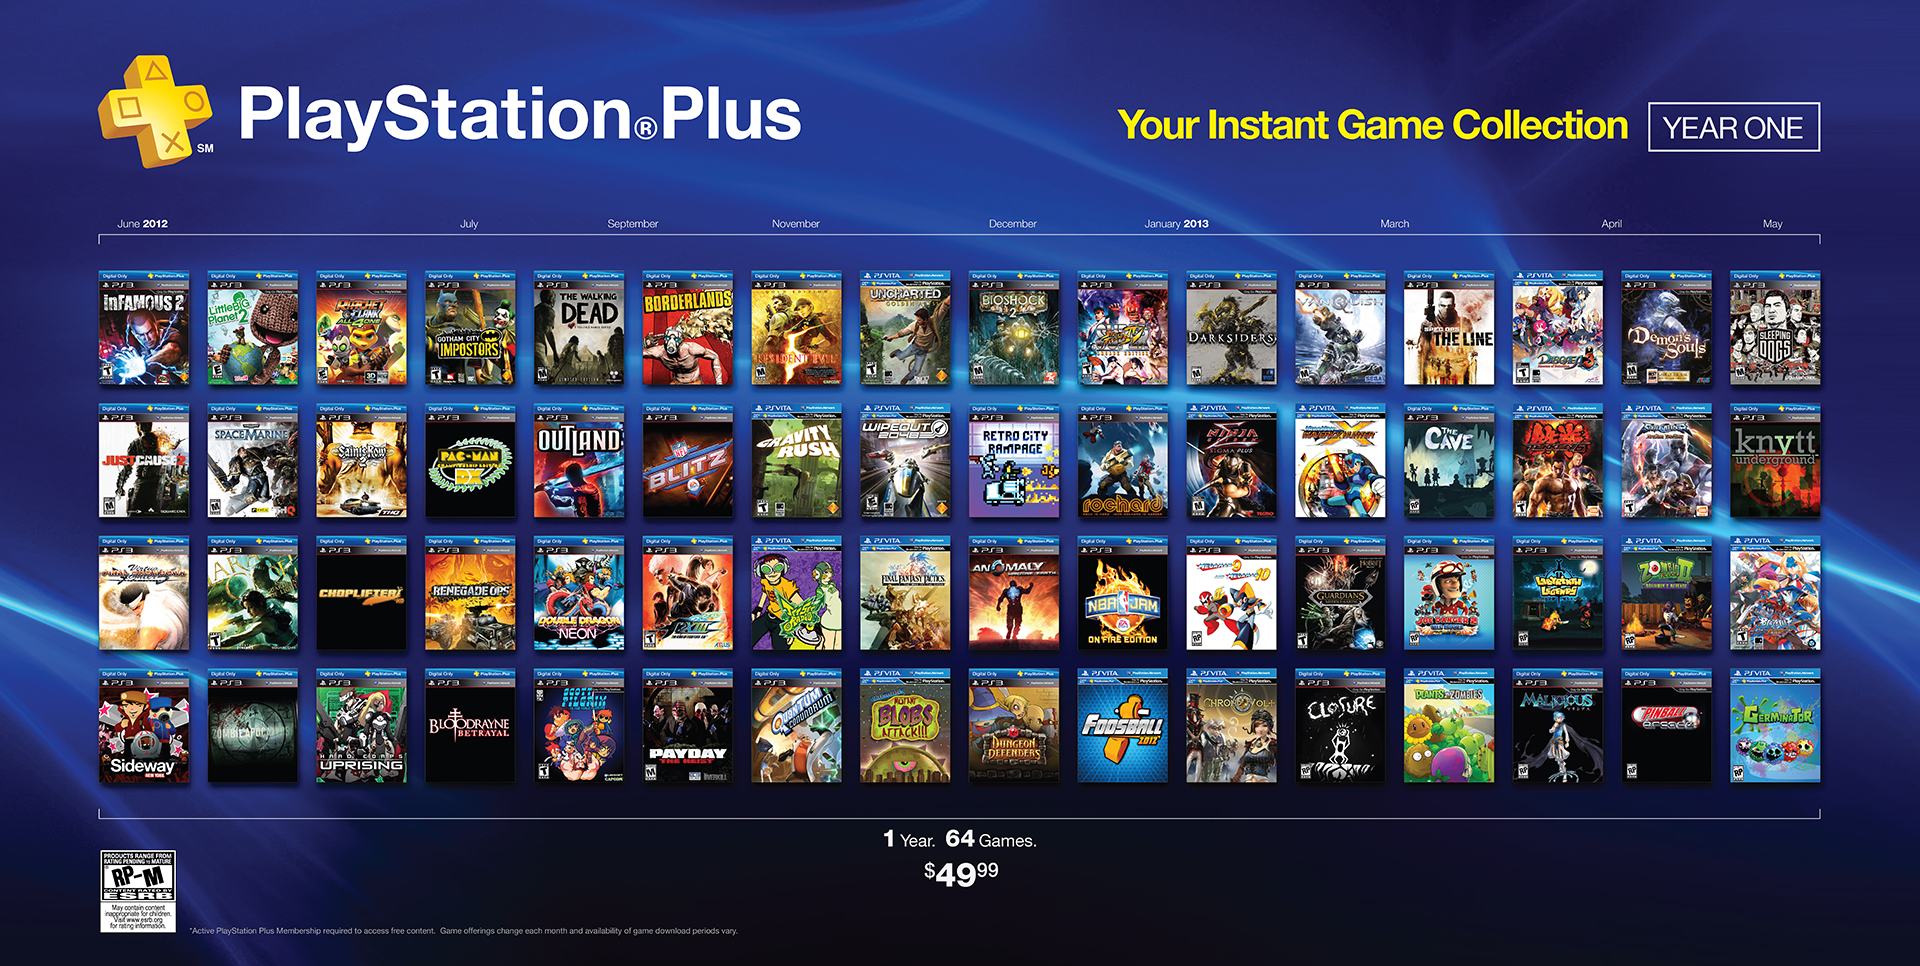 Extra каталог игр. PS Plus ps4. PS Plus Deluxe список игр. Игры PLAYSTATION Plus collection. PS Plus на ps4 список игр.